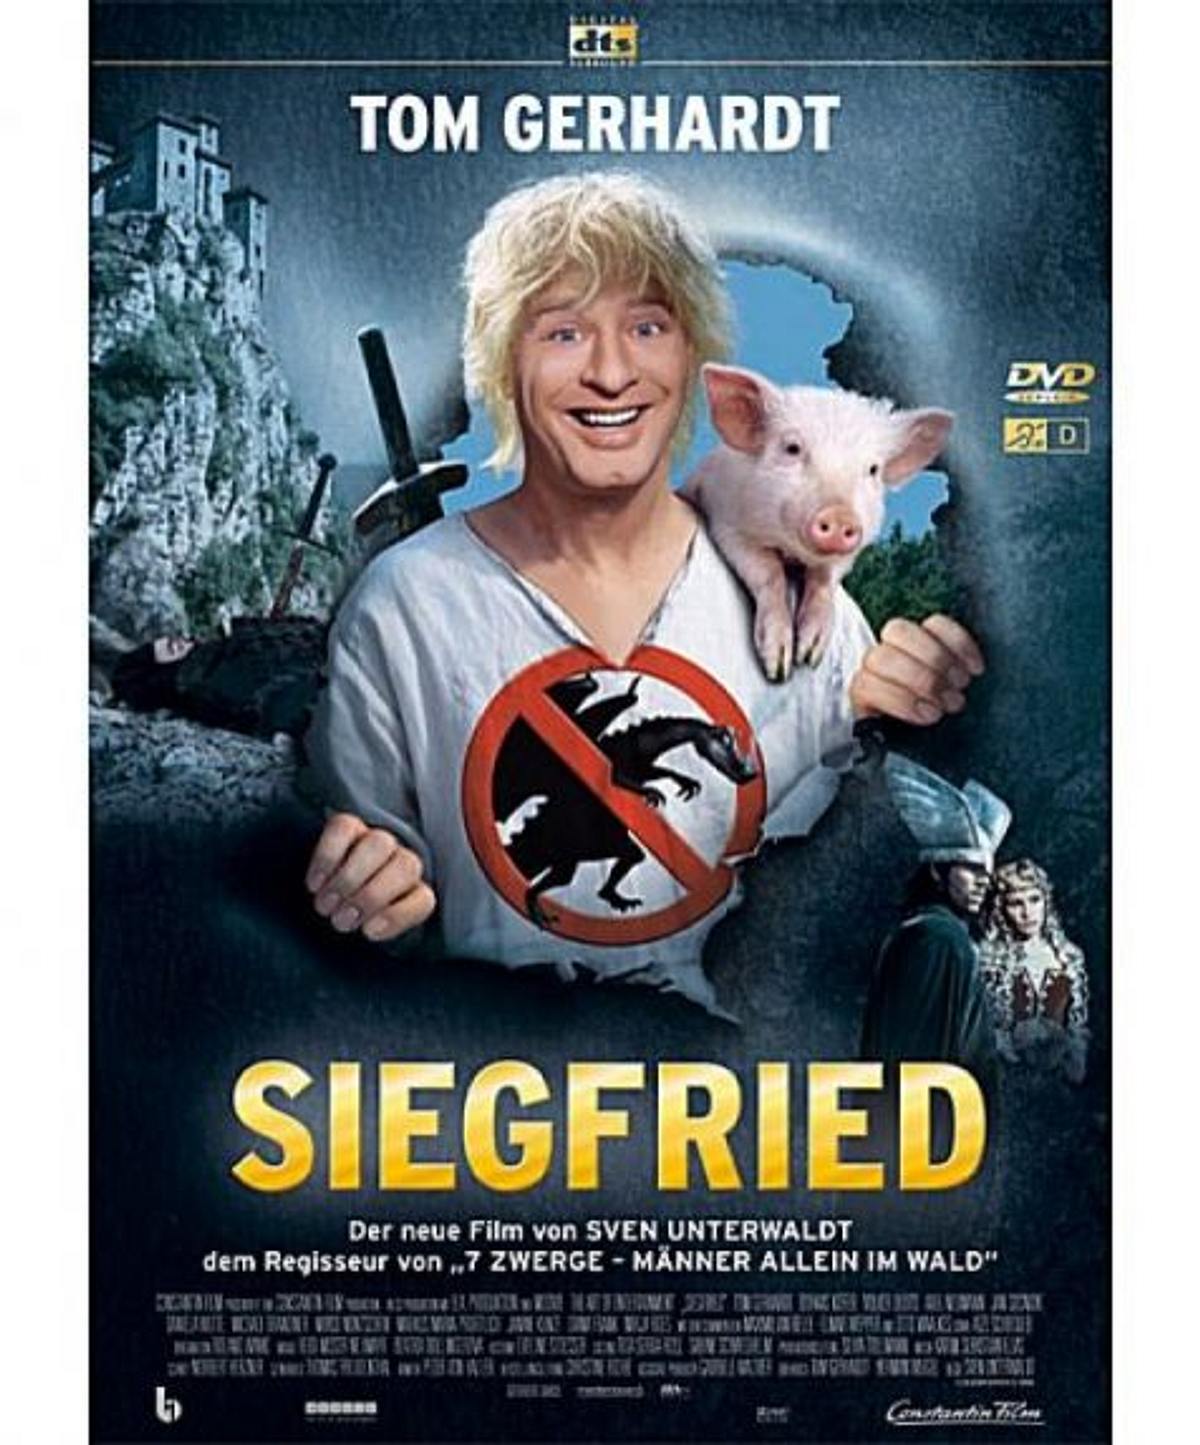 Siegfried: Ein Held, wie aus dem Märchenbuch!